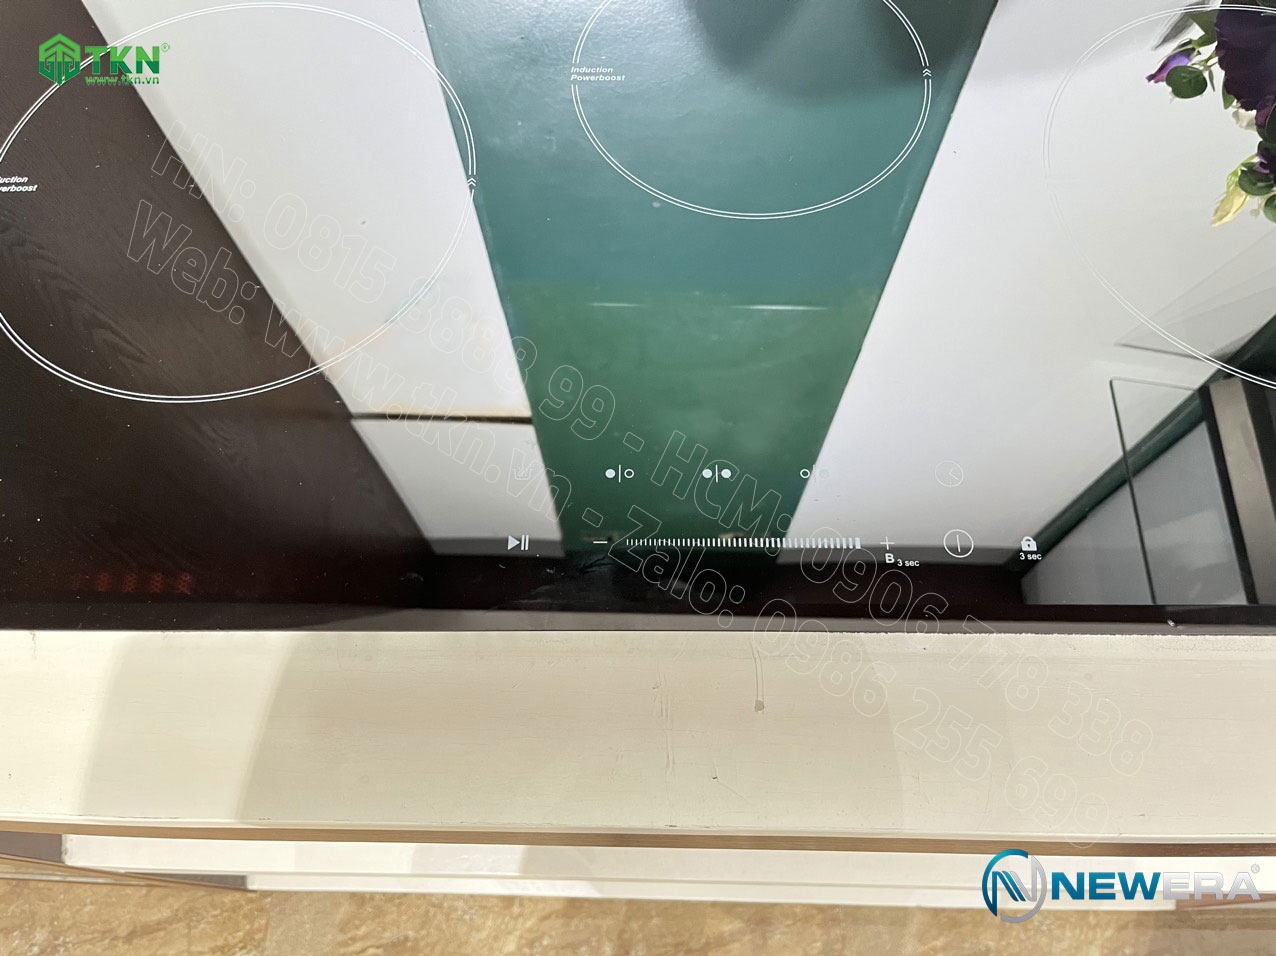 Bếp điện từ NewEra mặt kính gốm thuỷ tinh vitro 3 vùng nấu NE73C3B 3